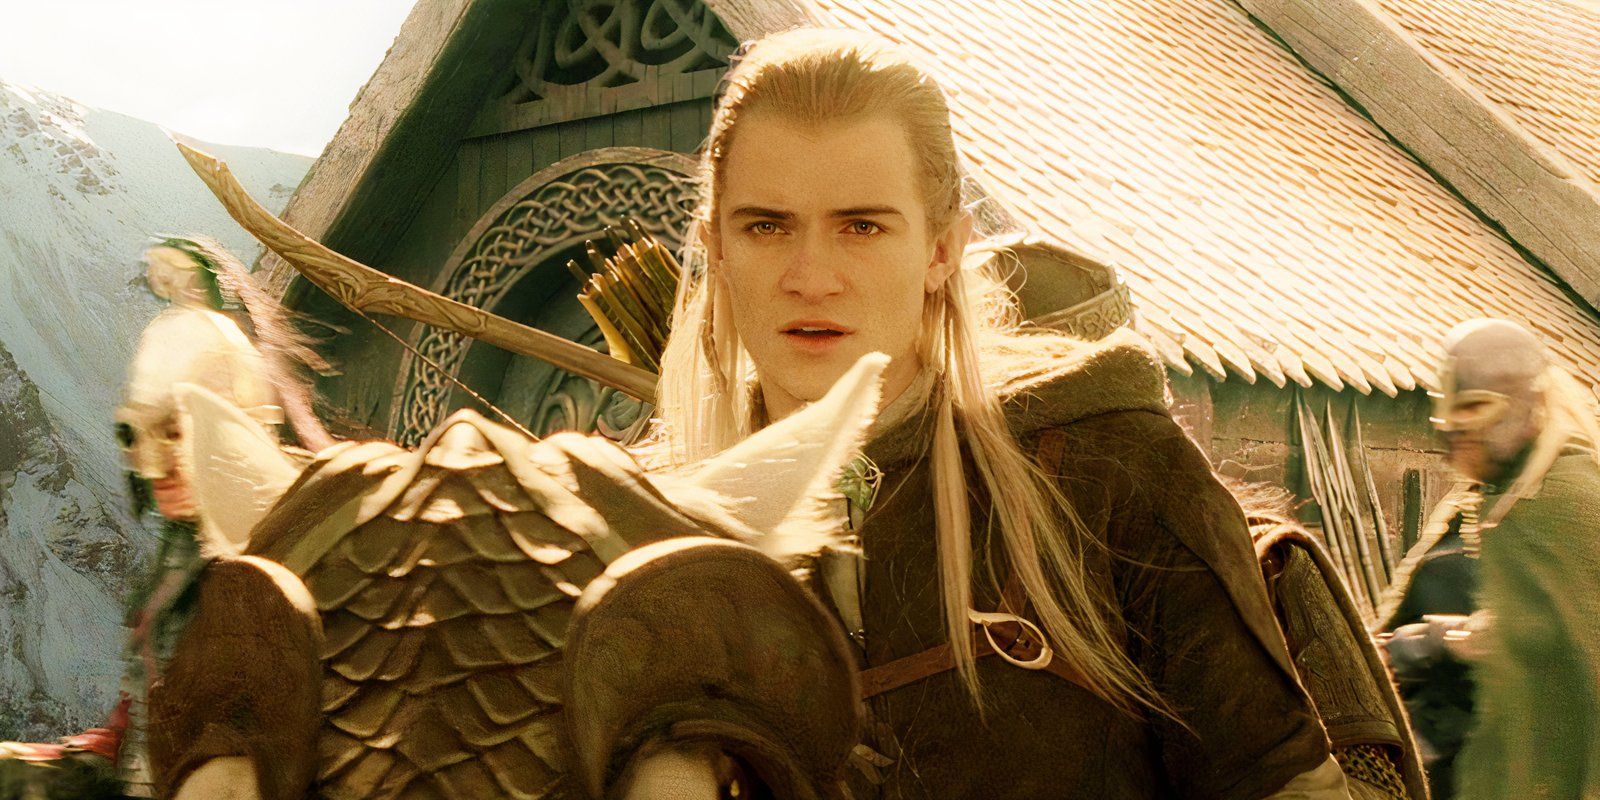 El cosplayer de El señor de los anillos captura perfectamente a Legolas con su arco y flecha